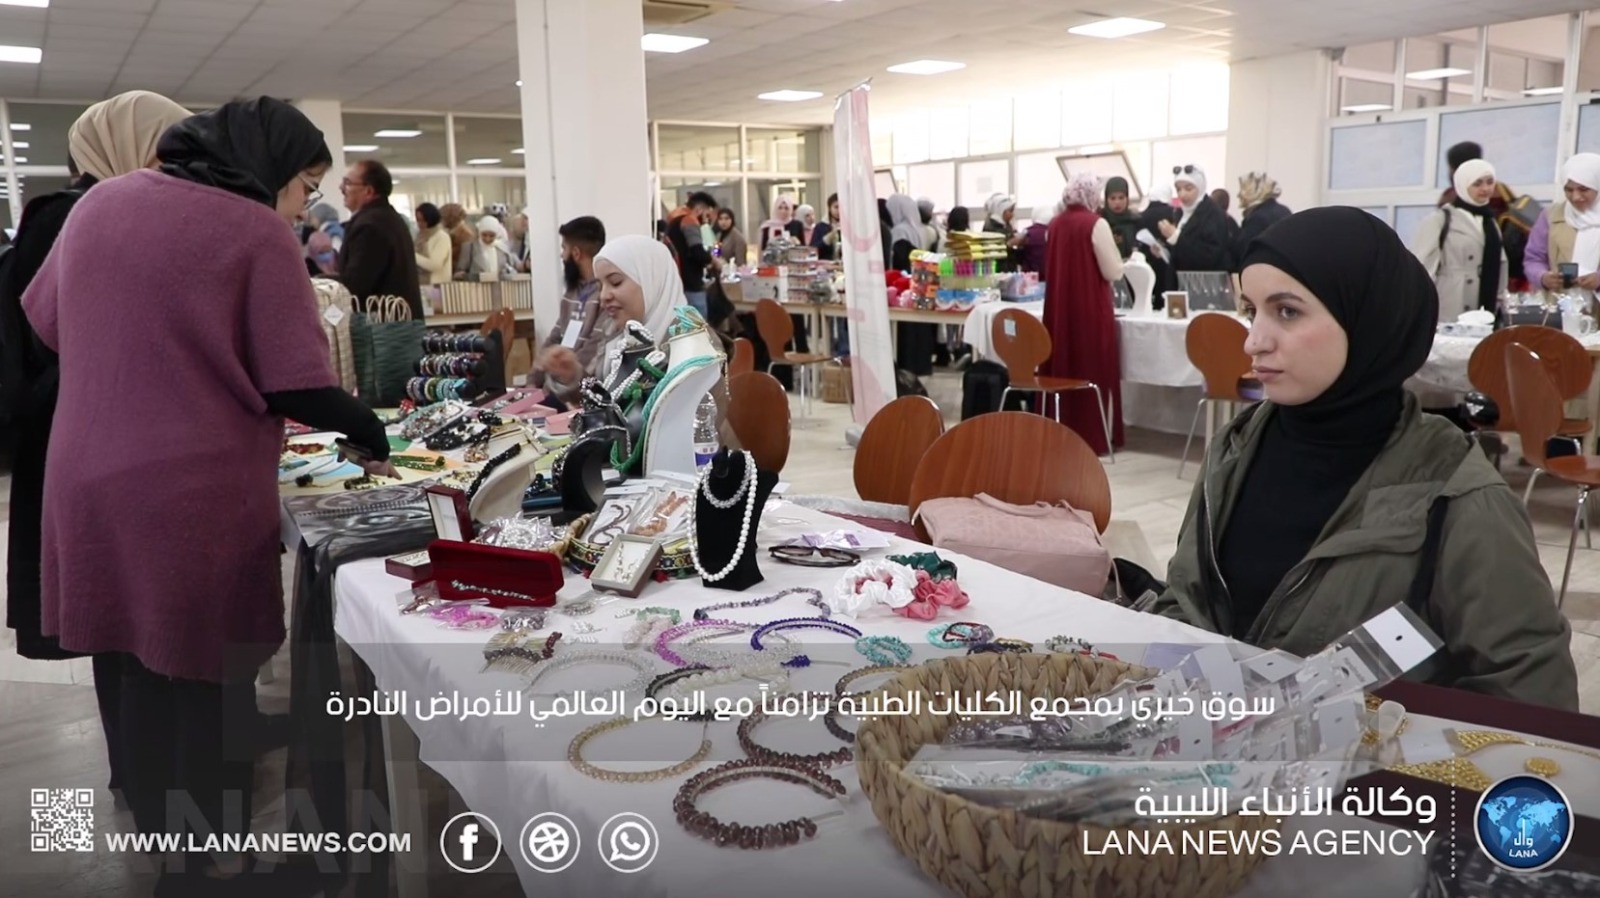 شؤون خدمة المجتمع والبيئة واتحاد طلبة ليبيا ينظمان سوقا خيريا ببنغازي